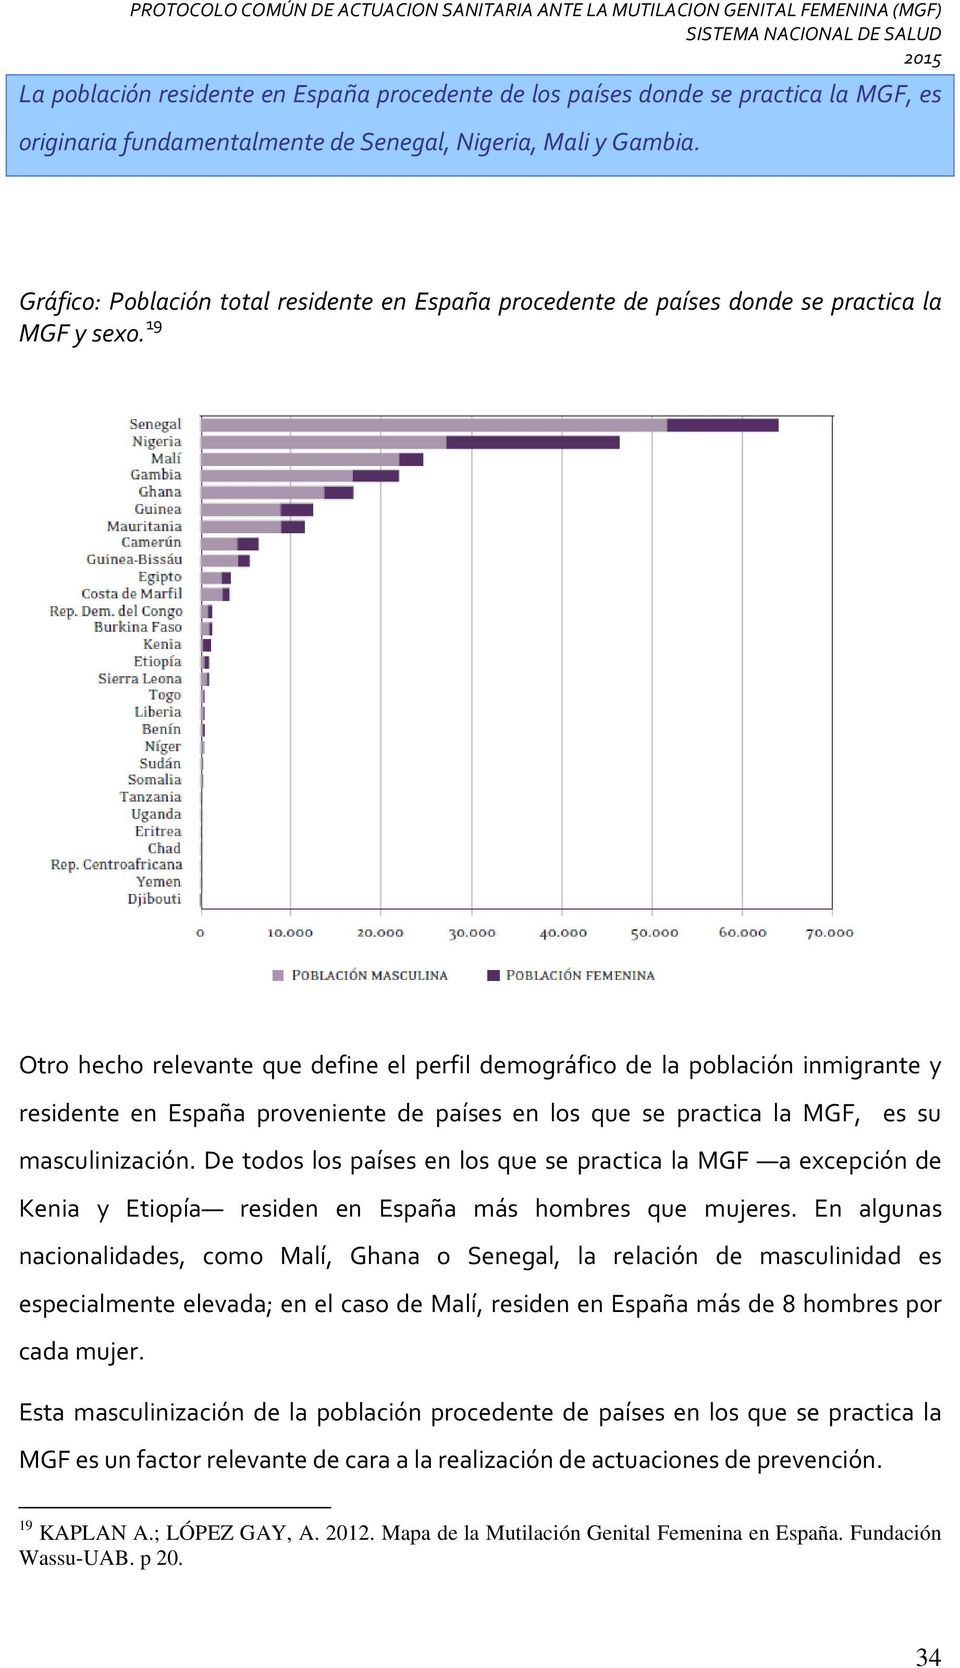 19 Otro hecho relevante que define el perfil demográfico de la población inmigrante y residente en España proveniente de países en los que se practica la MGF, es su masculinización.